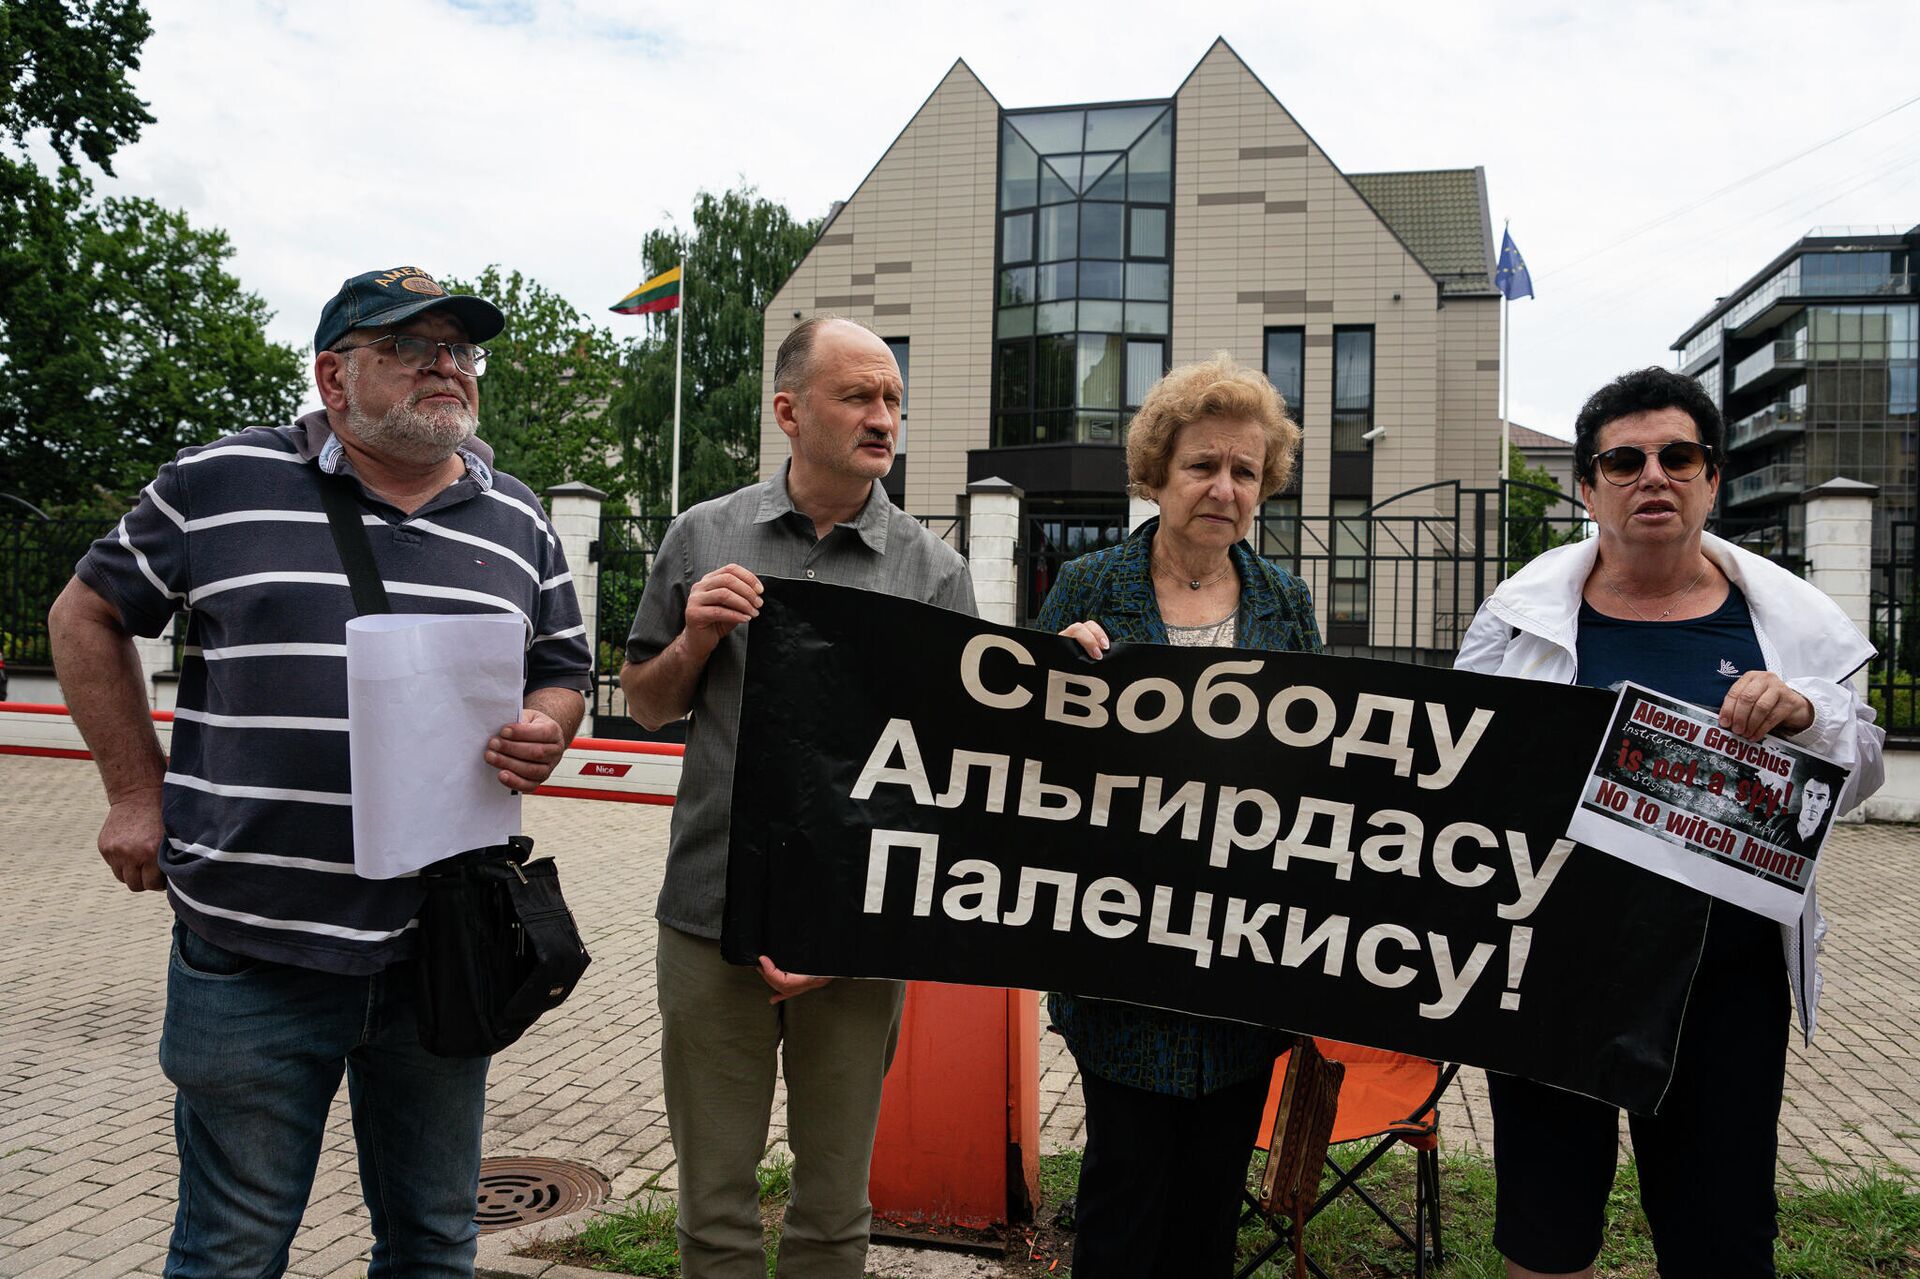 Русский союз Латвии провел акцию солидарности с политическими узниками у здания посольства Литвы в Риге - Sputnik Латвия, 1920, 09.08.2021